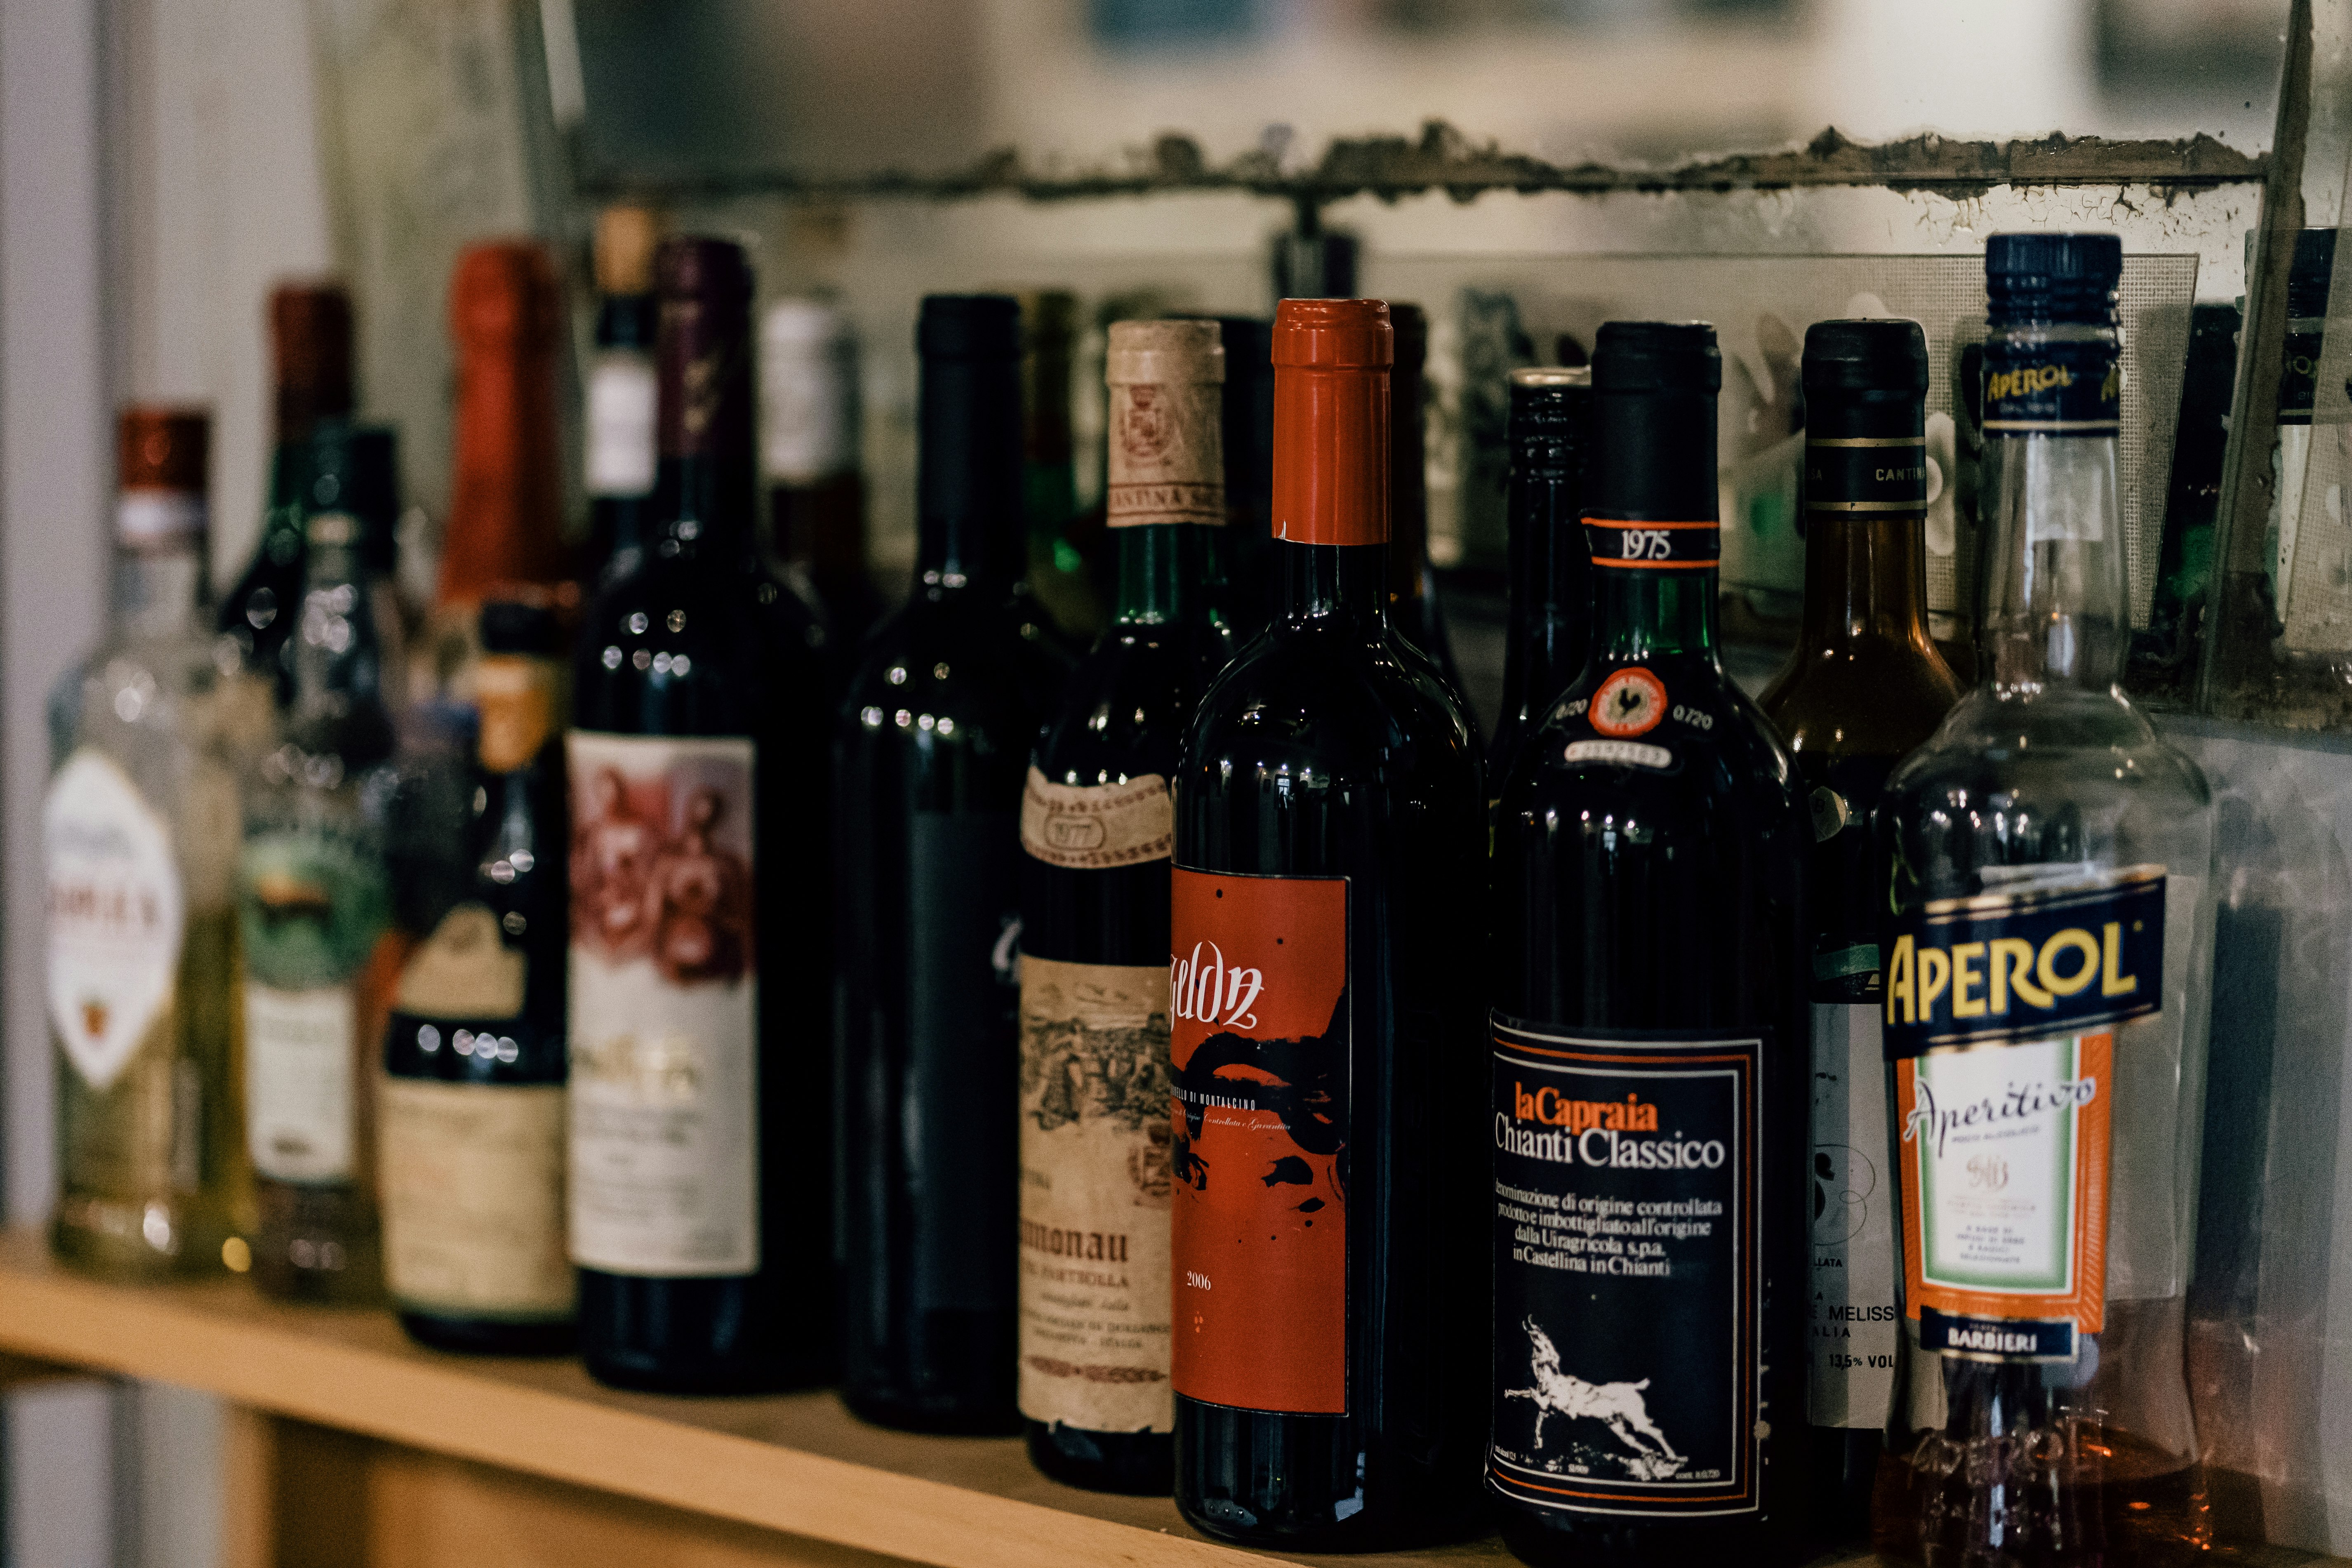 A shelf full of Italian wine and spirits in a trattoria